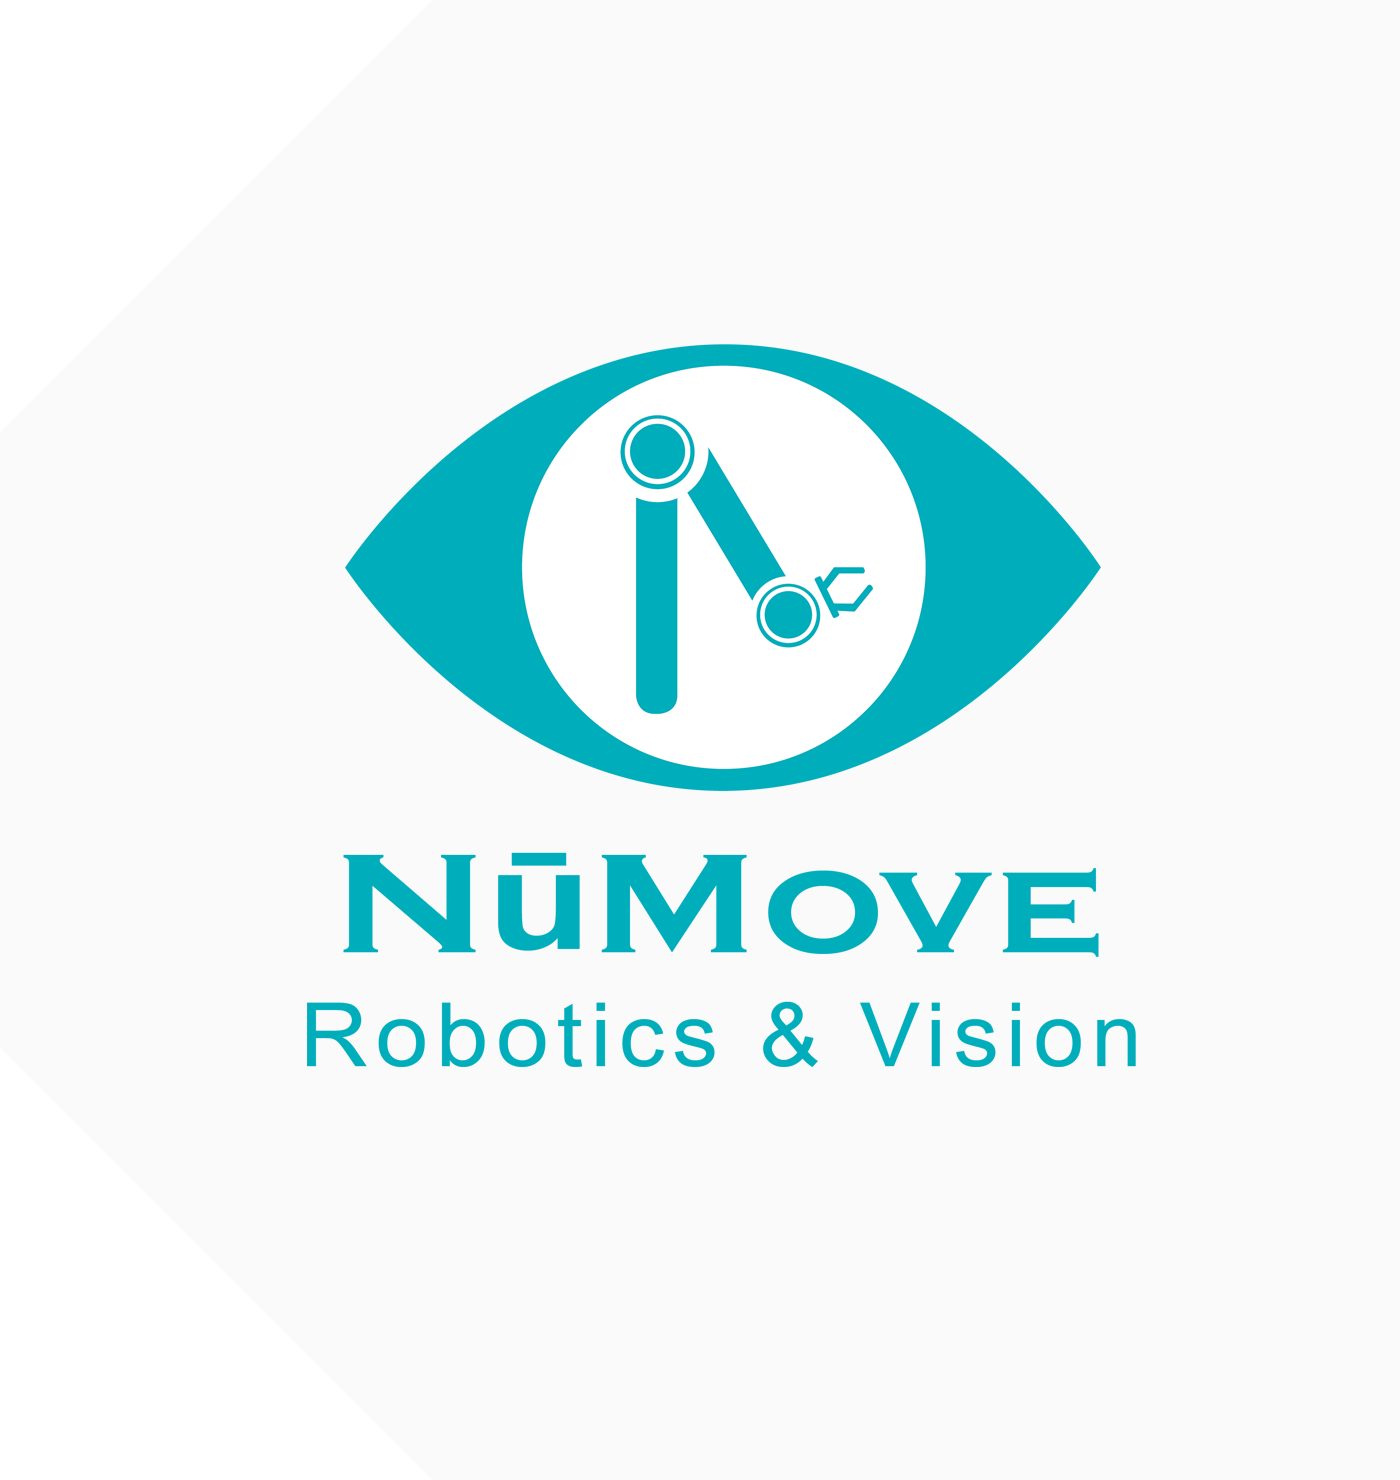 NüMove Robotics